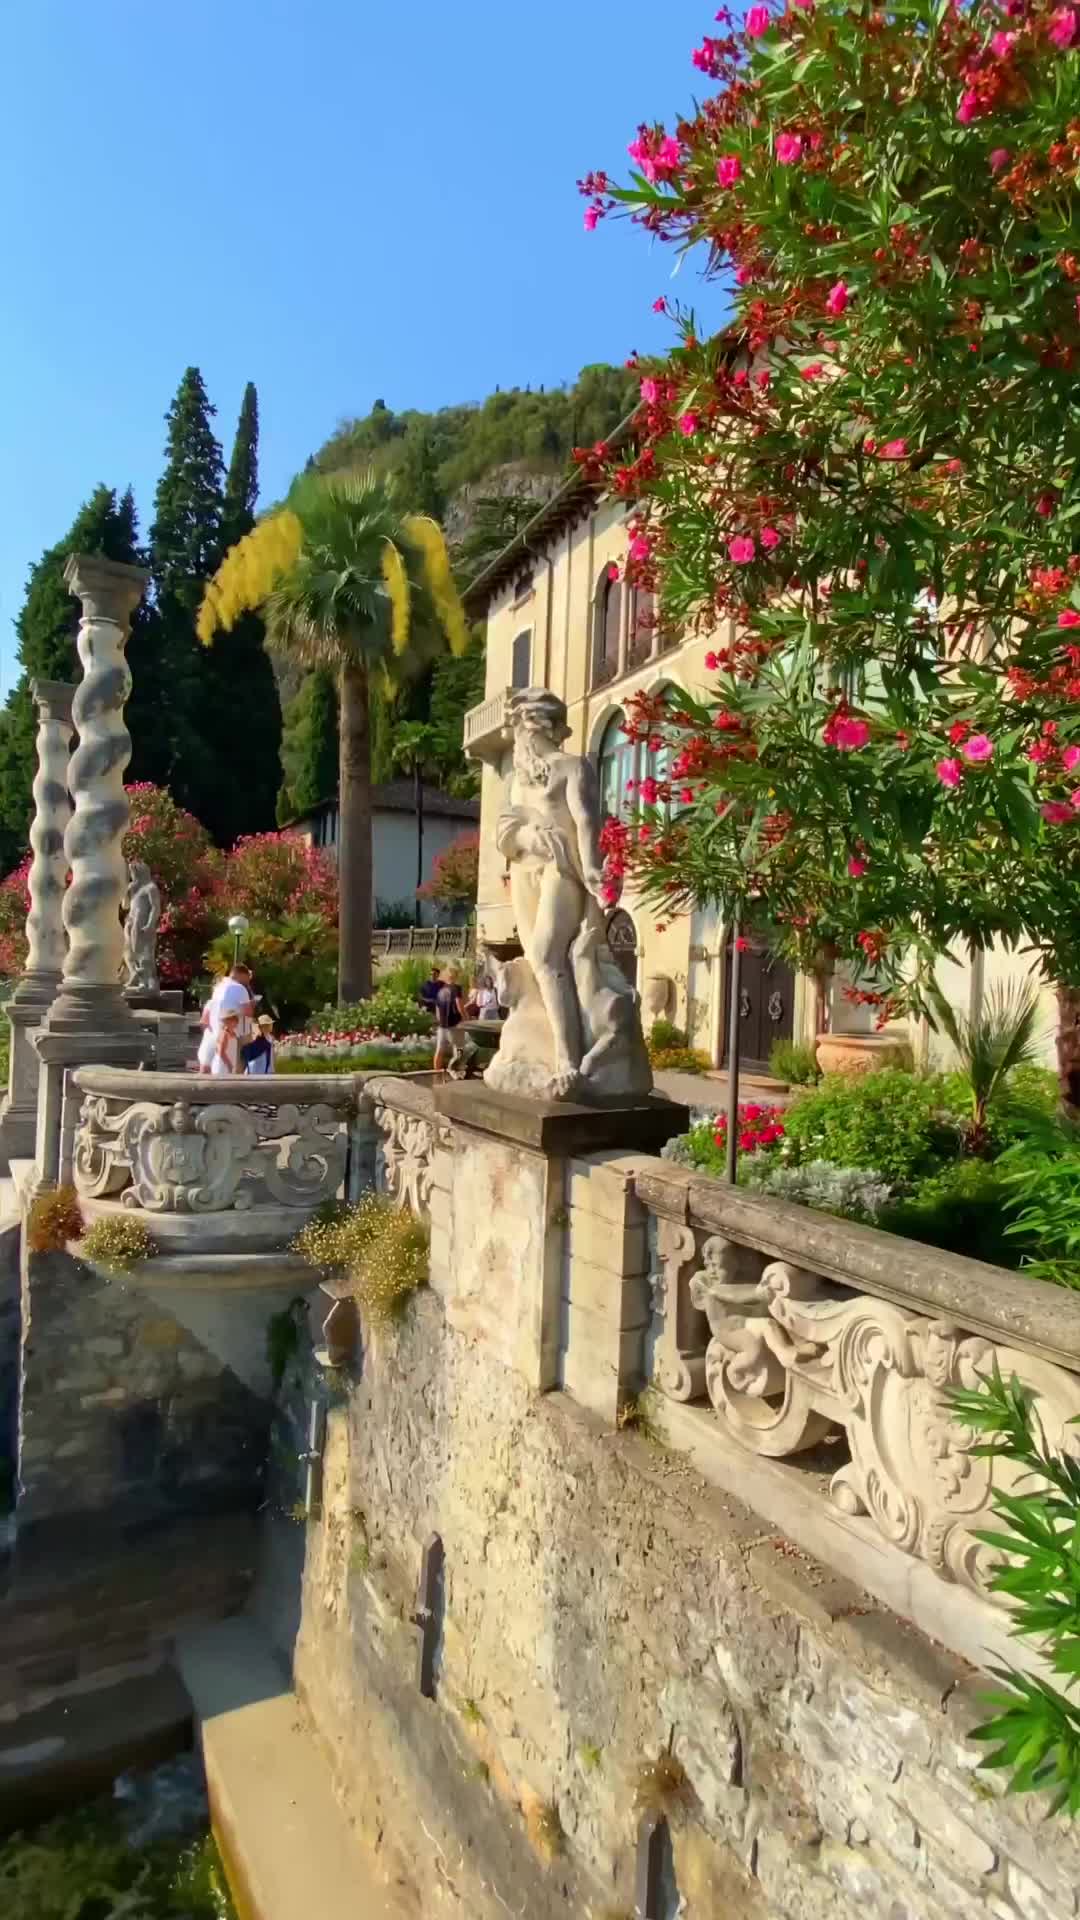 Discover Villa Monastero's Botanical Garden on Lake Como